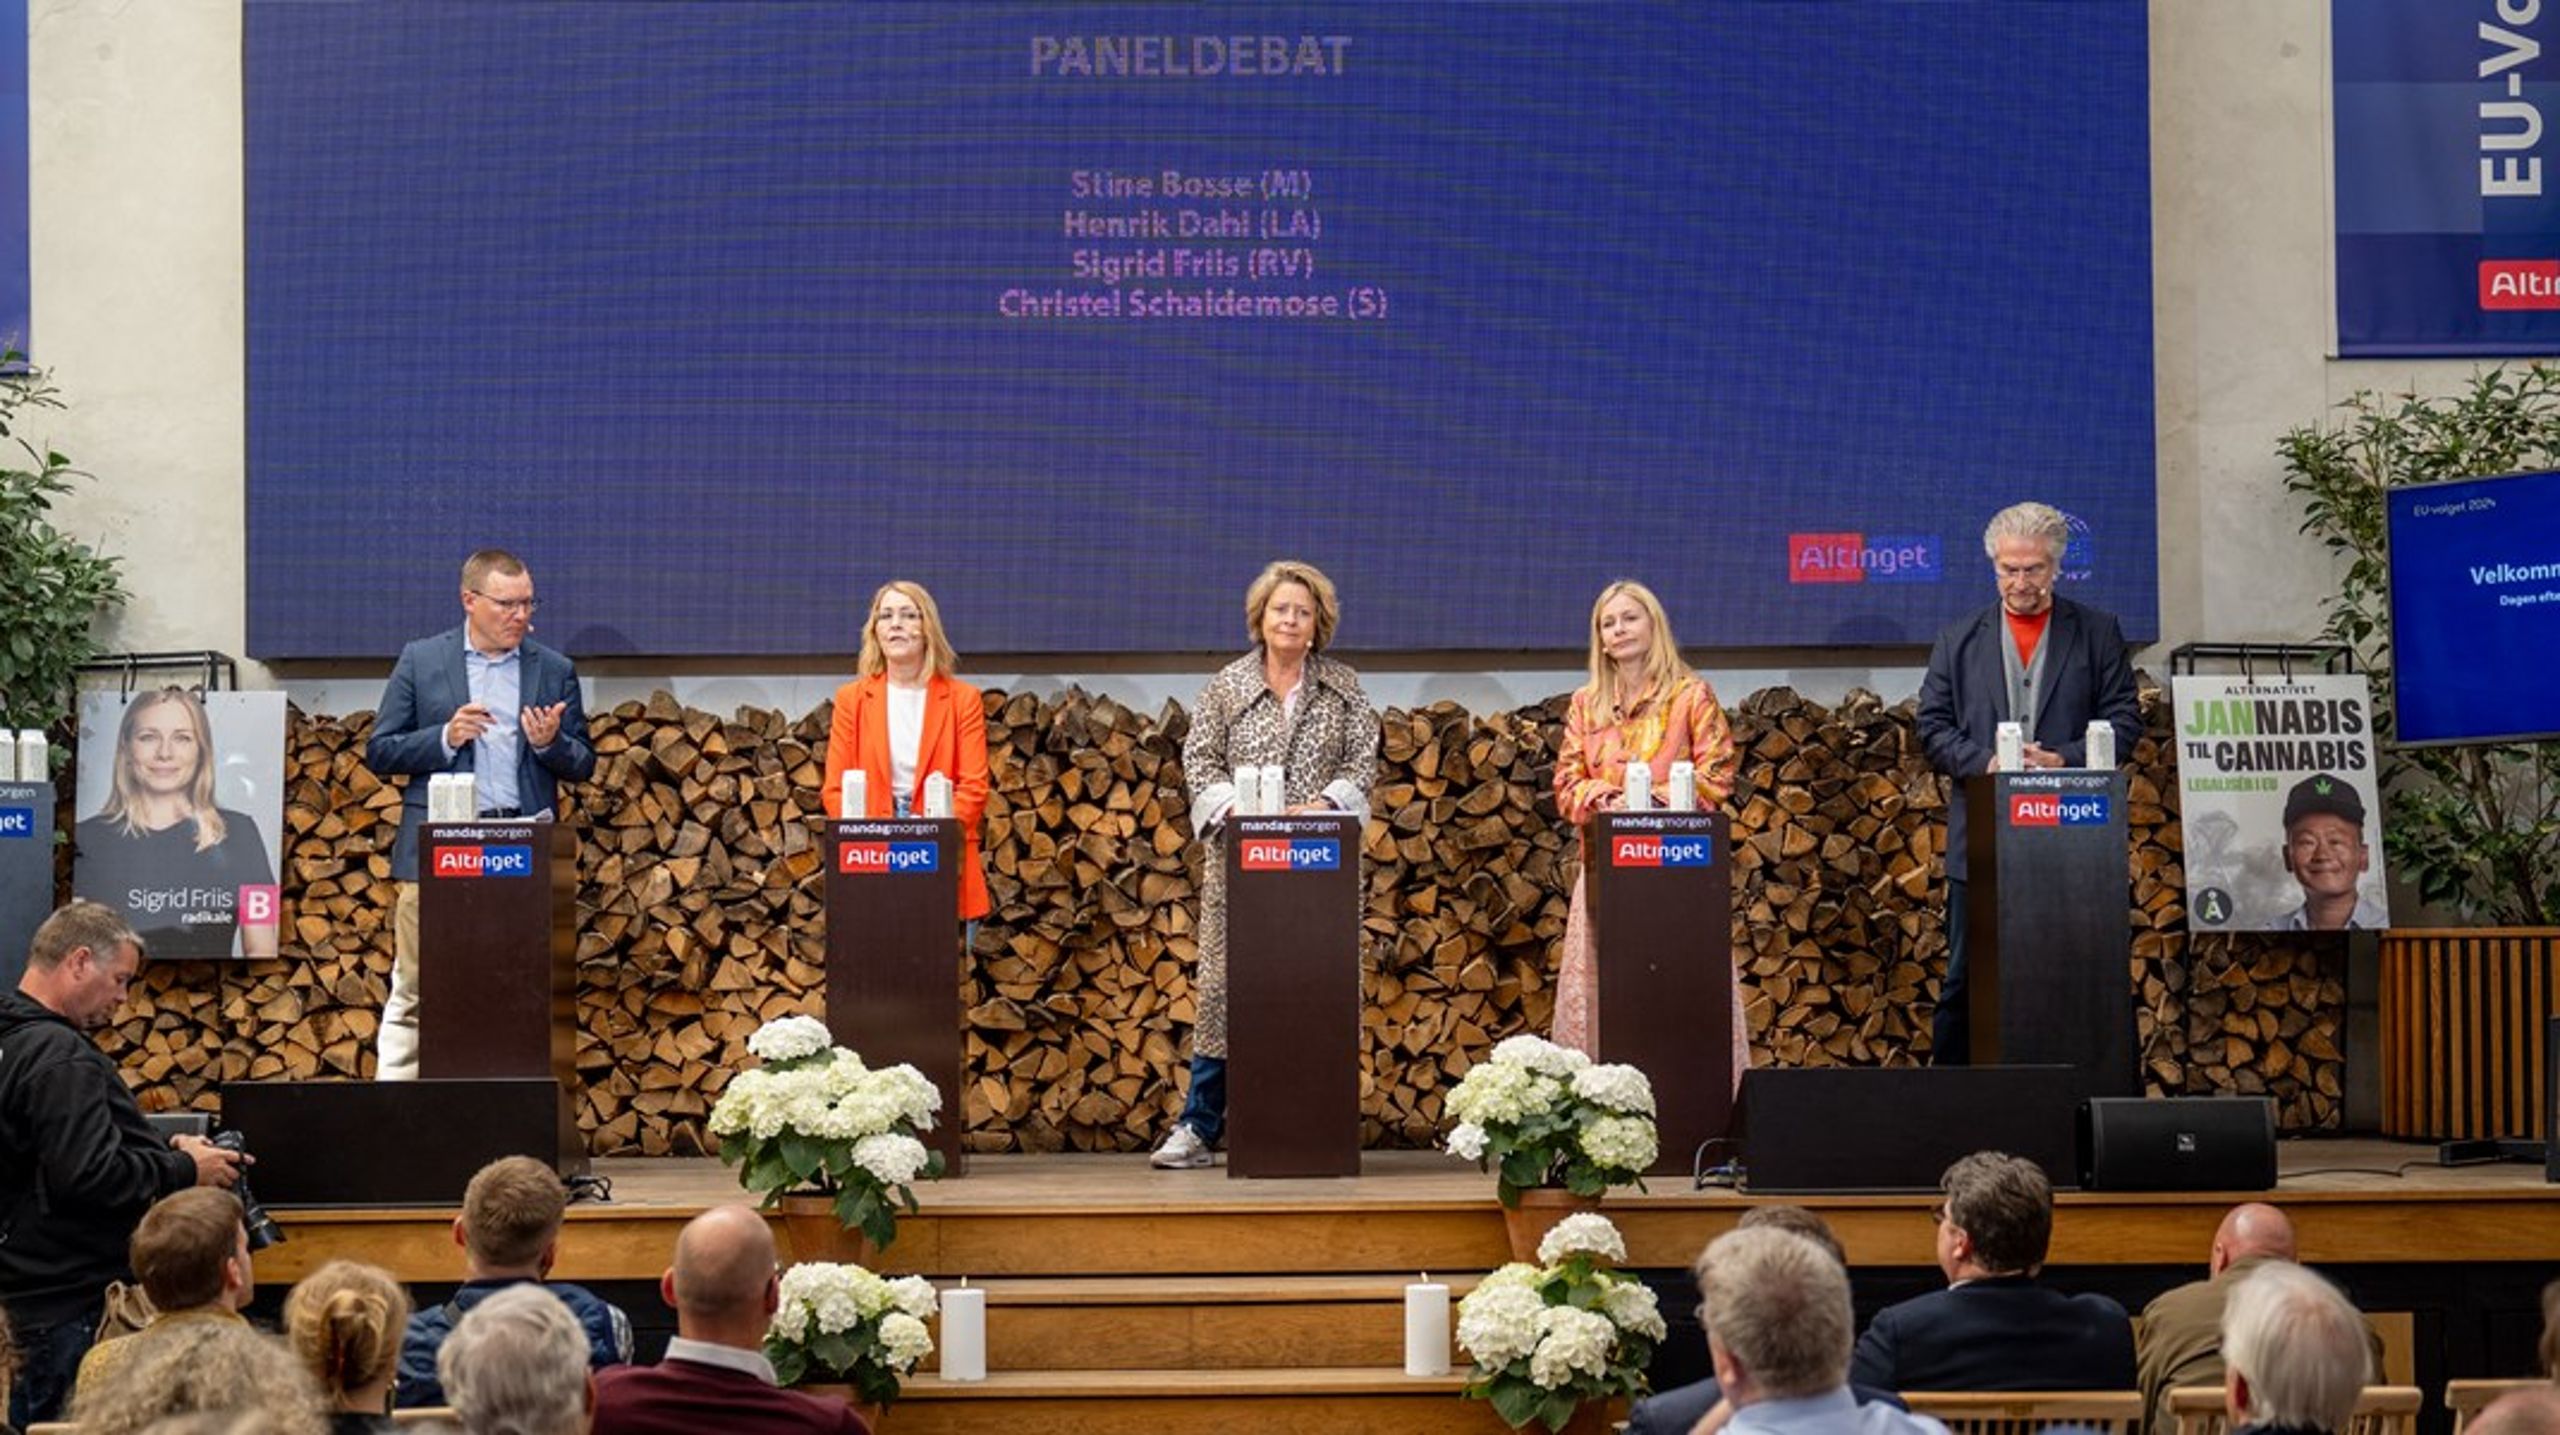 Altinget holdt mandag morgen paneldebat med mange af partiernes spidskandidater. På billedet ses Christel Schaldemose (S), Stine Bosse (M), Sigrid Friis (R) og Henrik Dahl (LA).